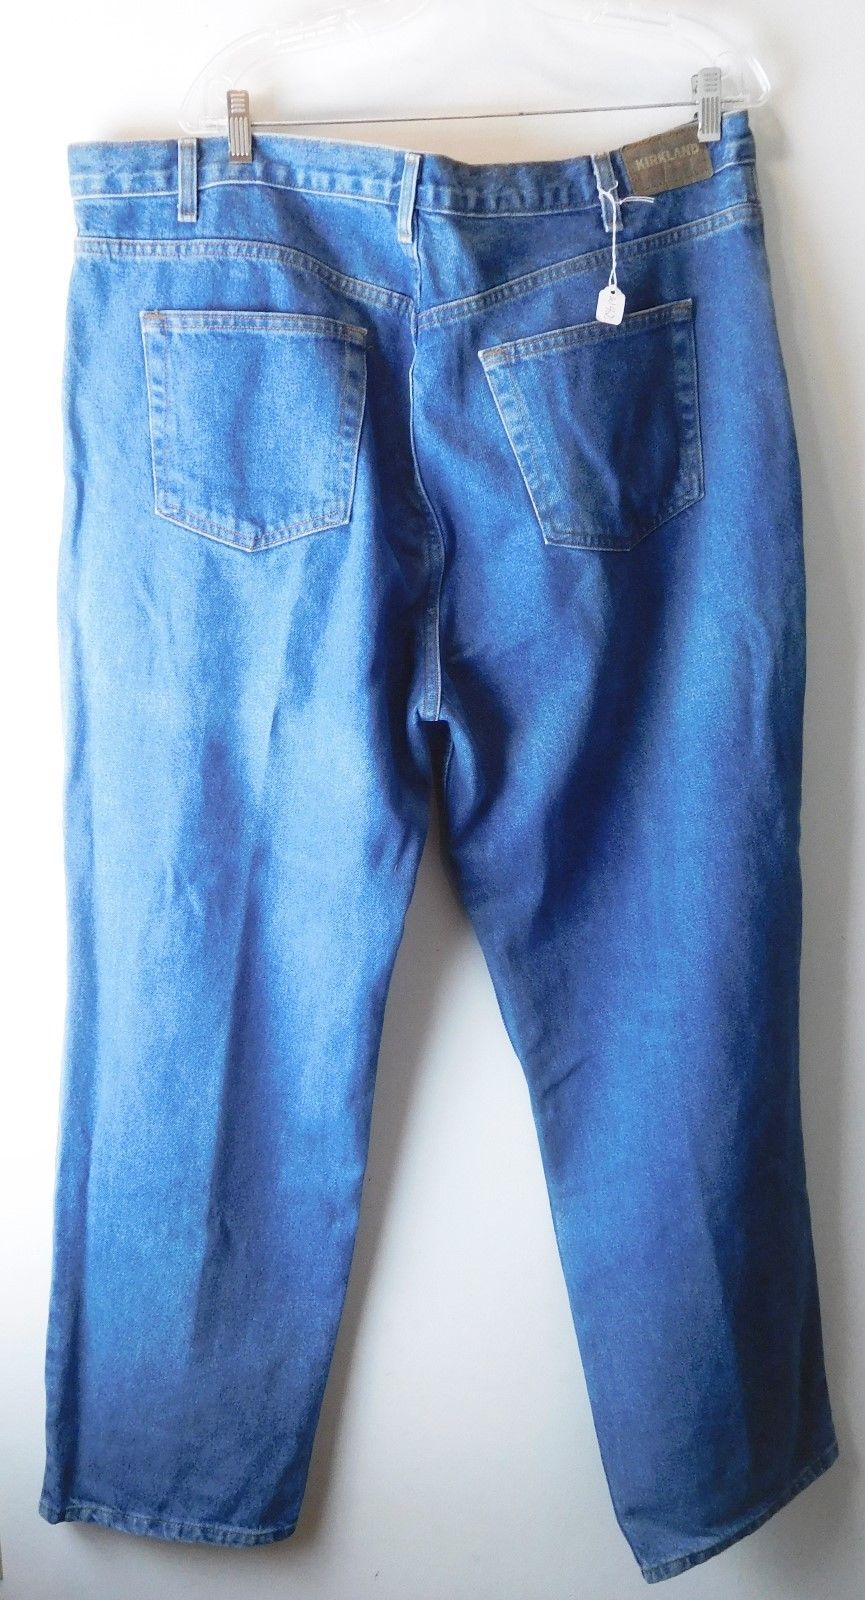 kirkland jeans 42x32